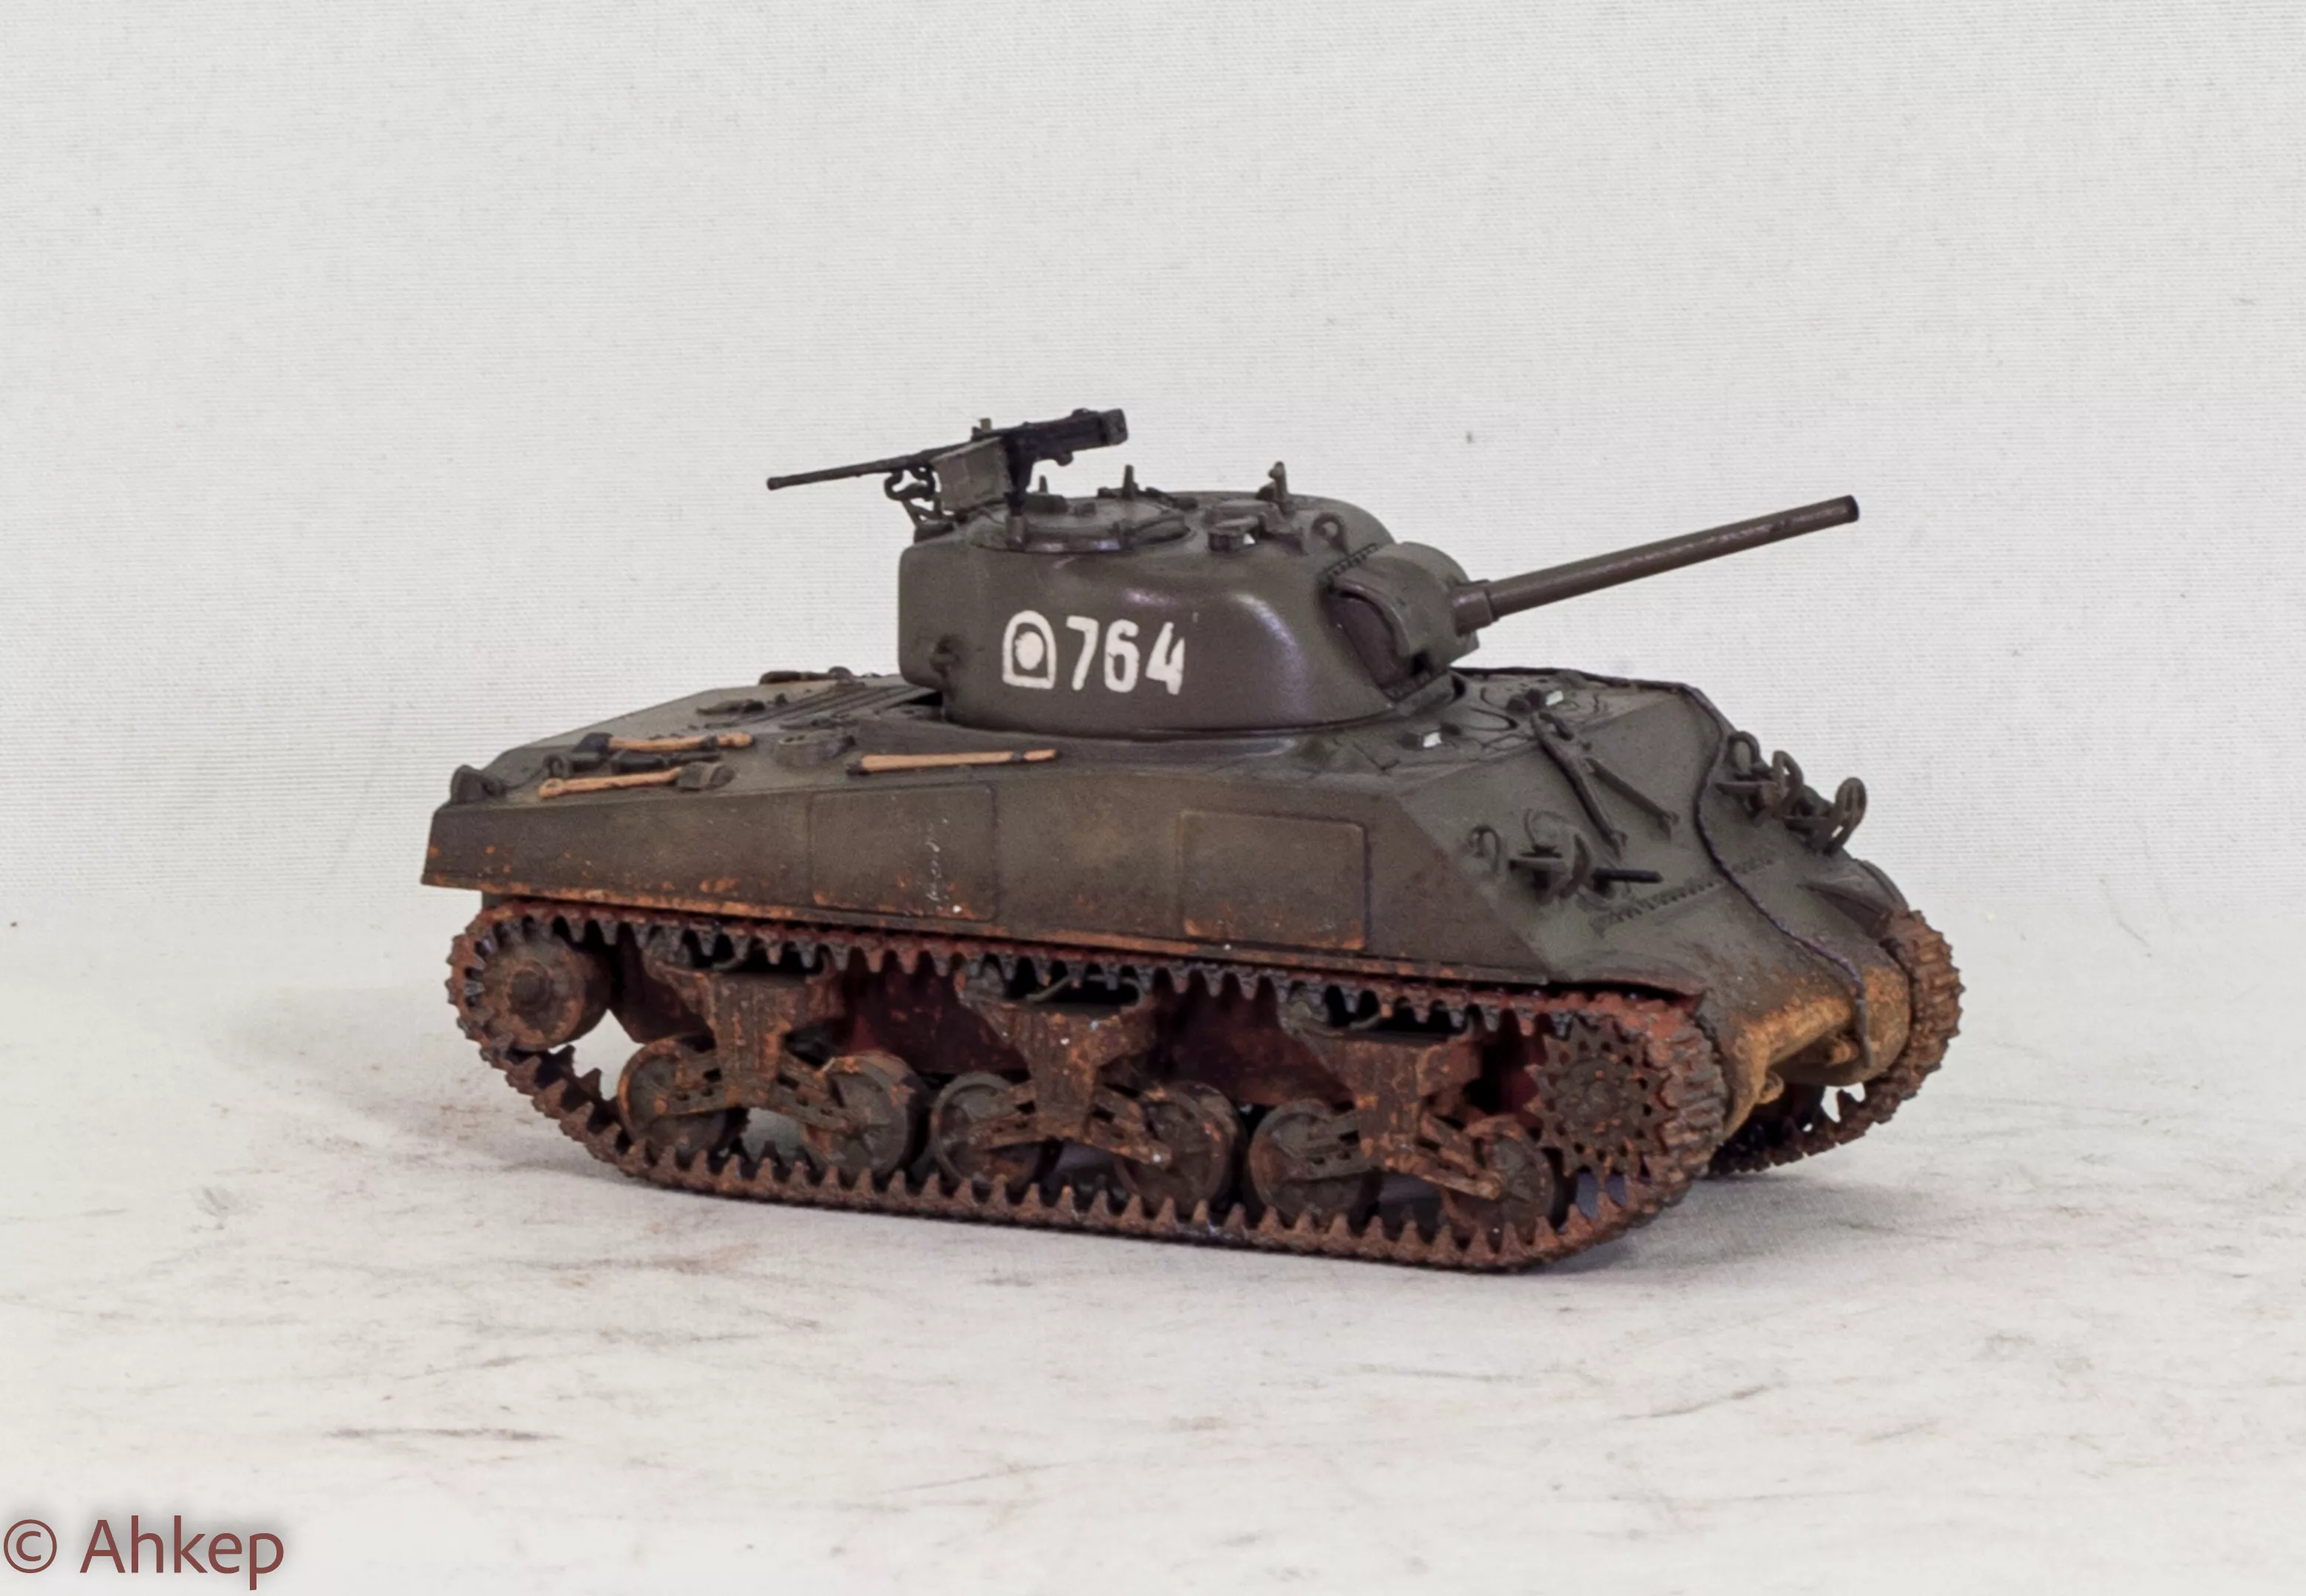 Американский средний танк Шерман М4А2